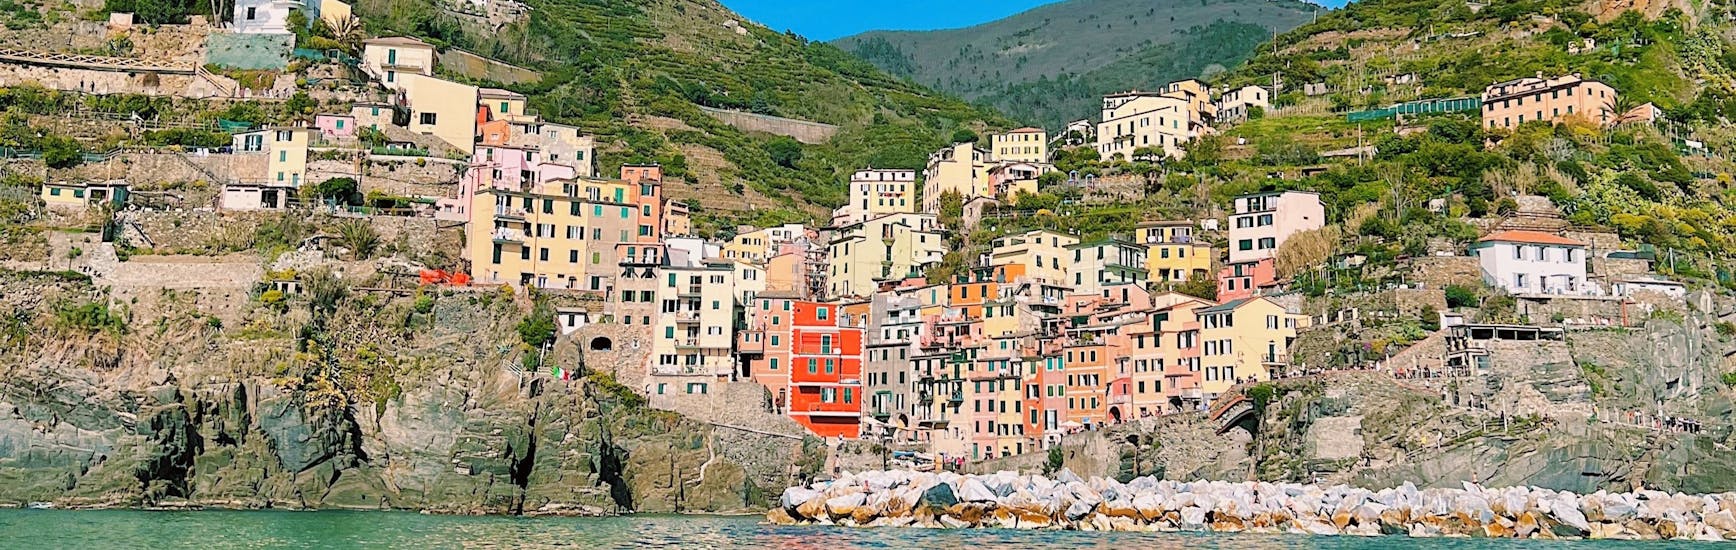 El pueblo de Riomaggiore visto desde el mar durante la excursión en velero desde La Spezia a Cinque Terre con Almuerzo con Velagiovane.